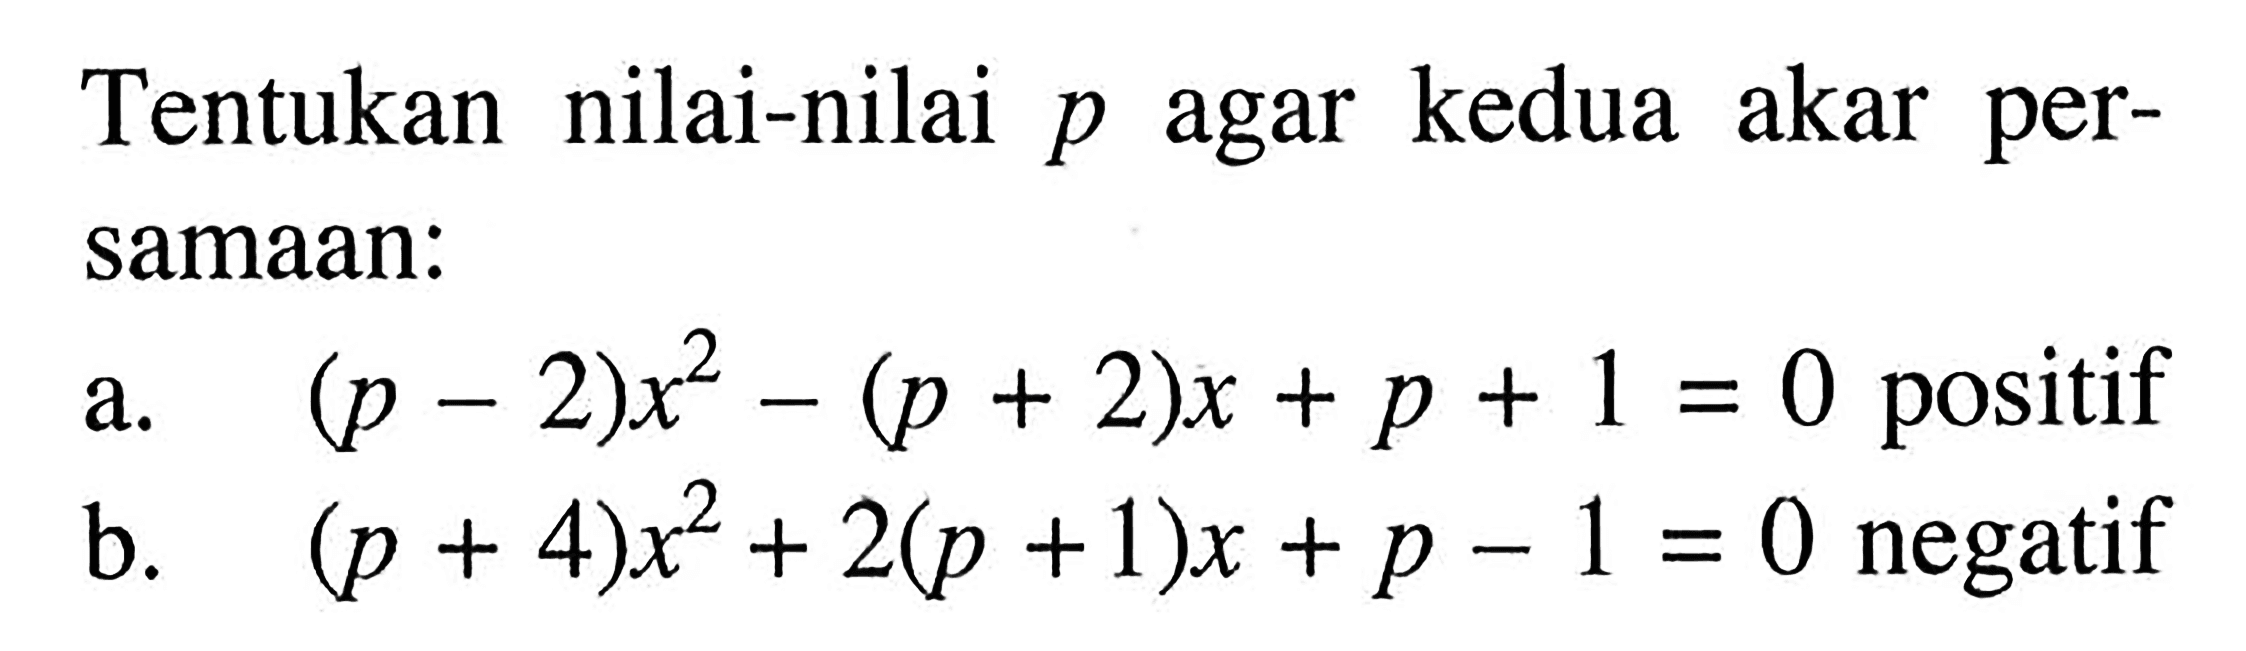 Tentukan nilai-nilai p agar kedua akar persamaan: a. (p-2)x^2-(p+2)x+p+1=0 positif b. (p+4)x^2+2(p+1)x+p-1=0 negatif